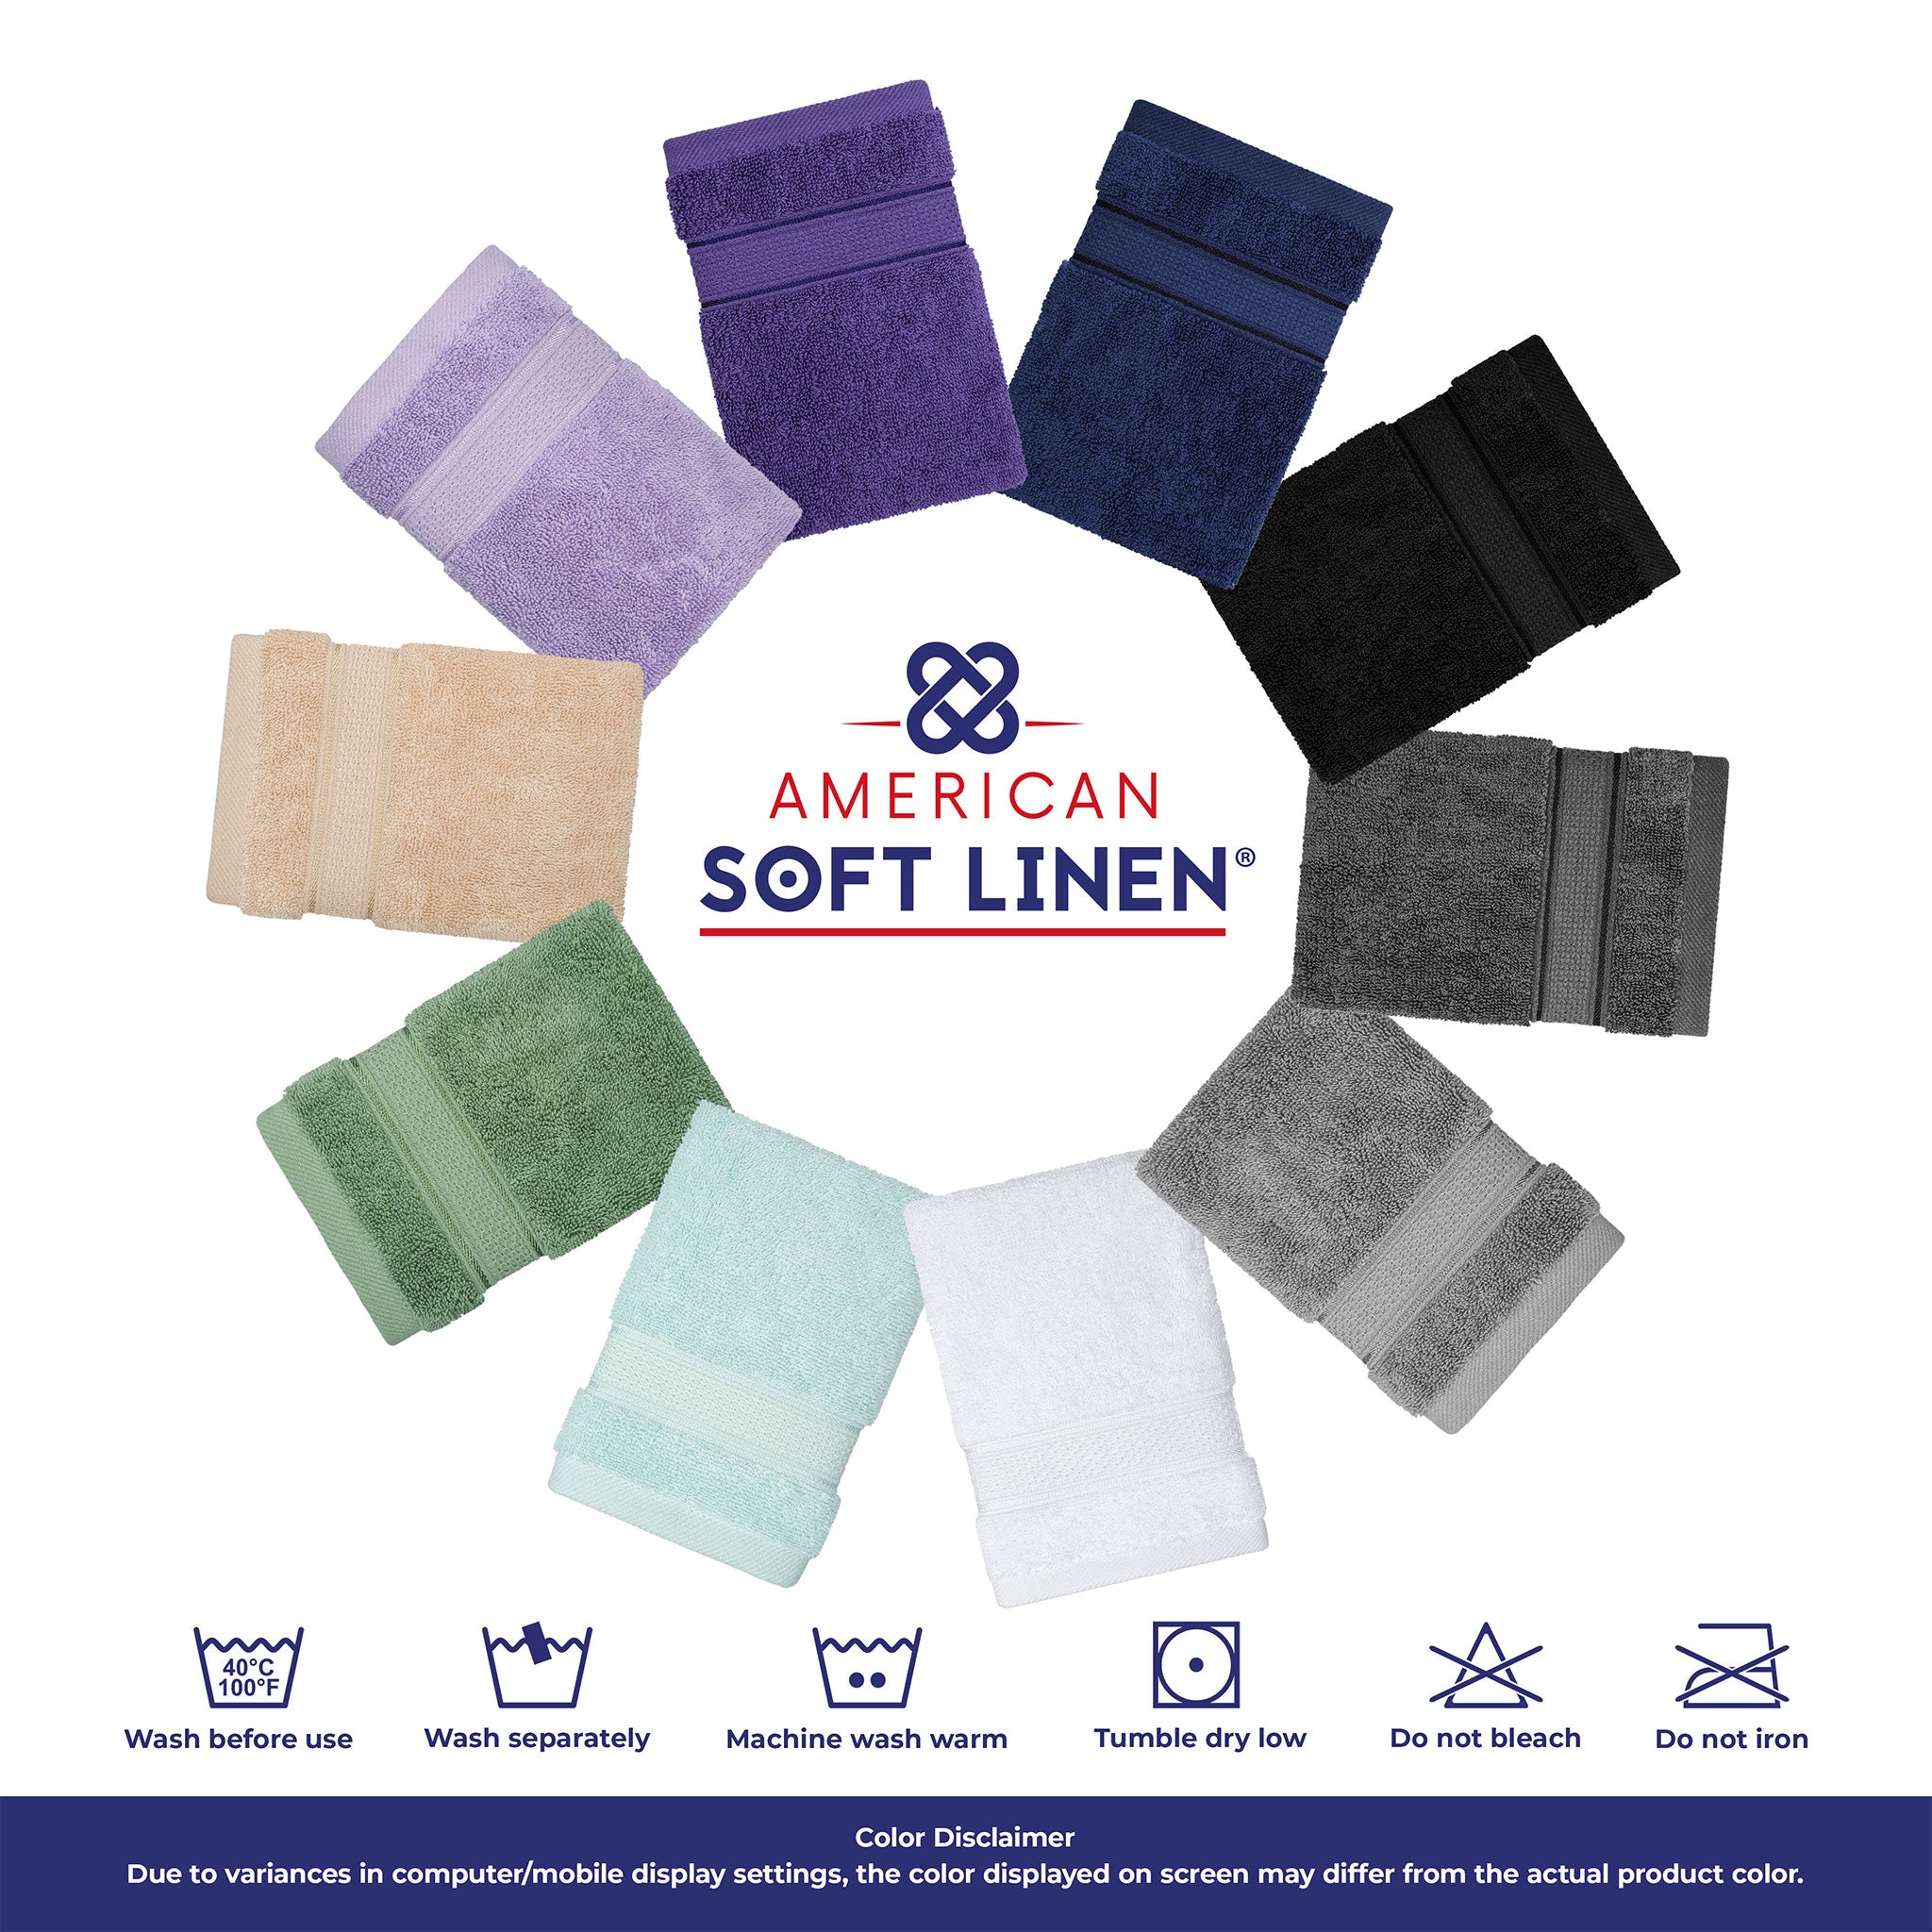 Salem 6 Piece 100% Turkish Combed Cotton Luxury Bath Towel Set-10 Set Case  Pack